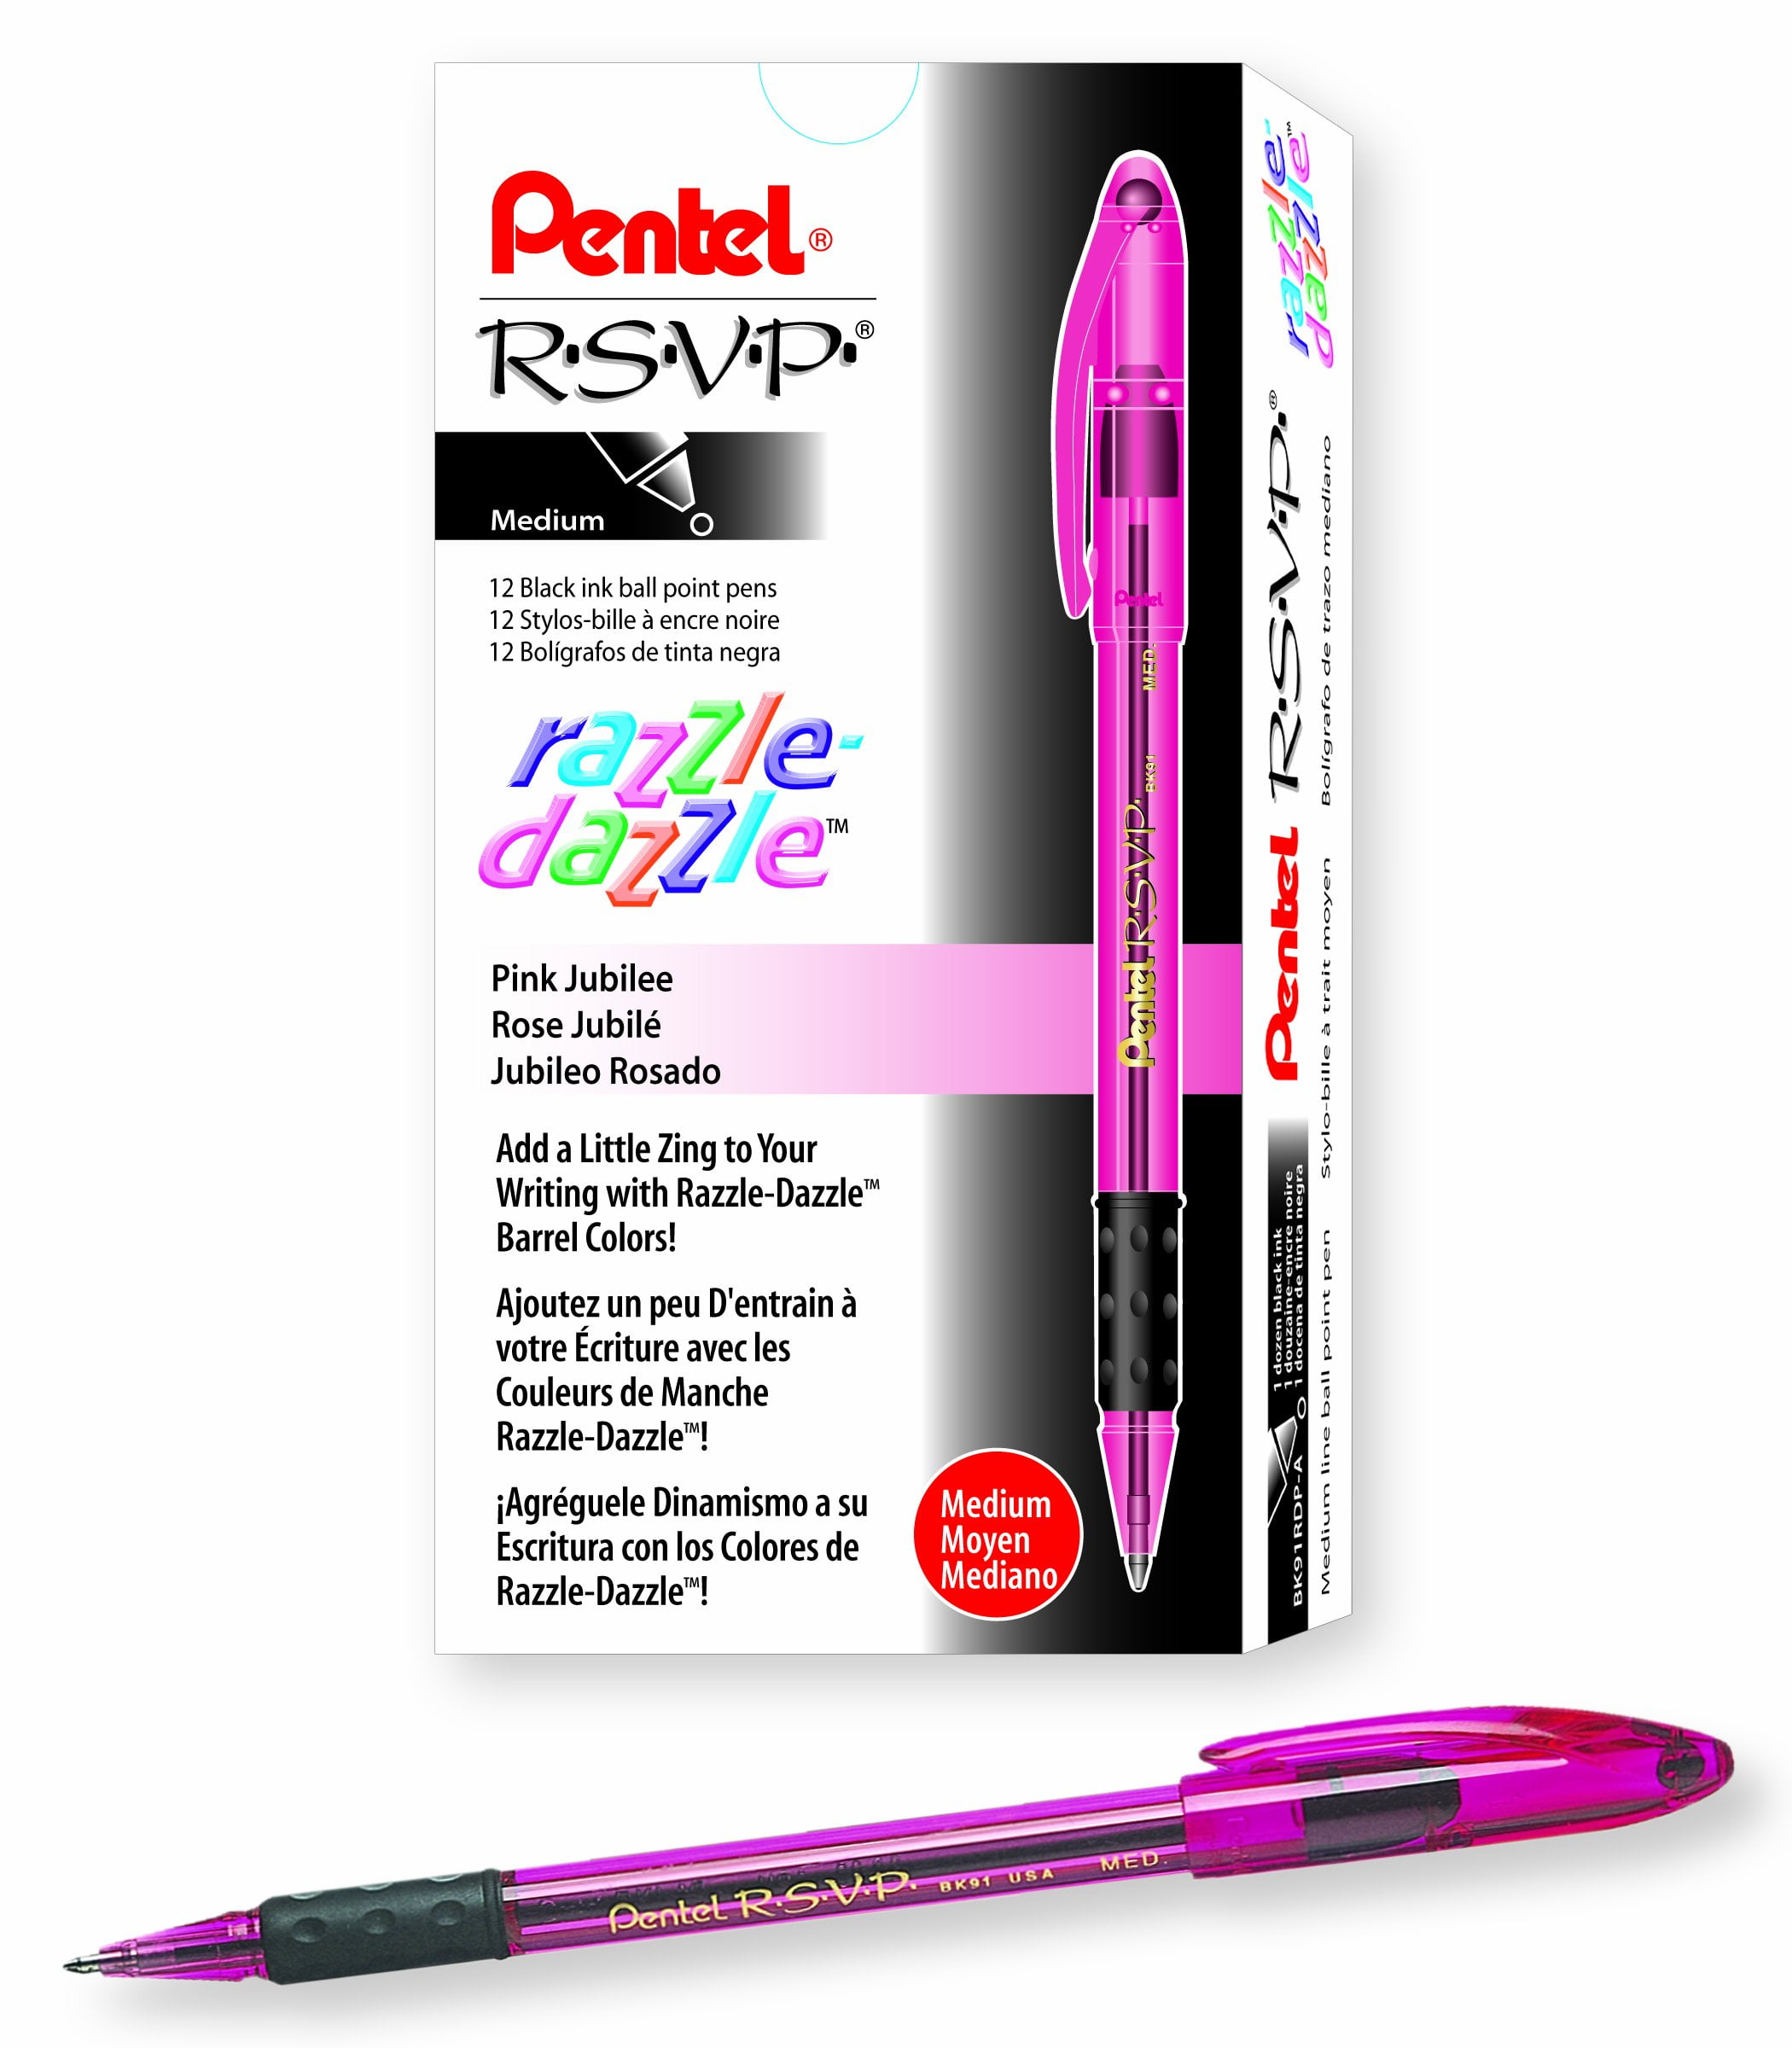 Gel Ink Ball Point Pens, Shuttle Art 15 Pack Black Japanese Style